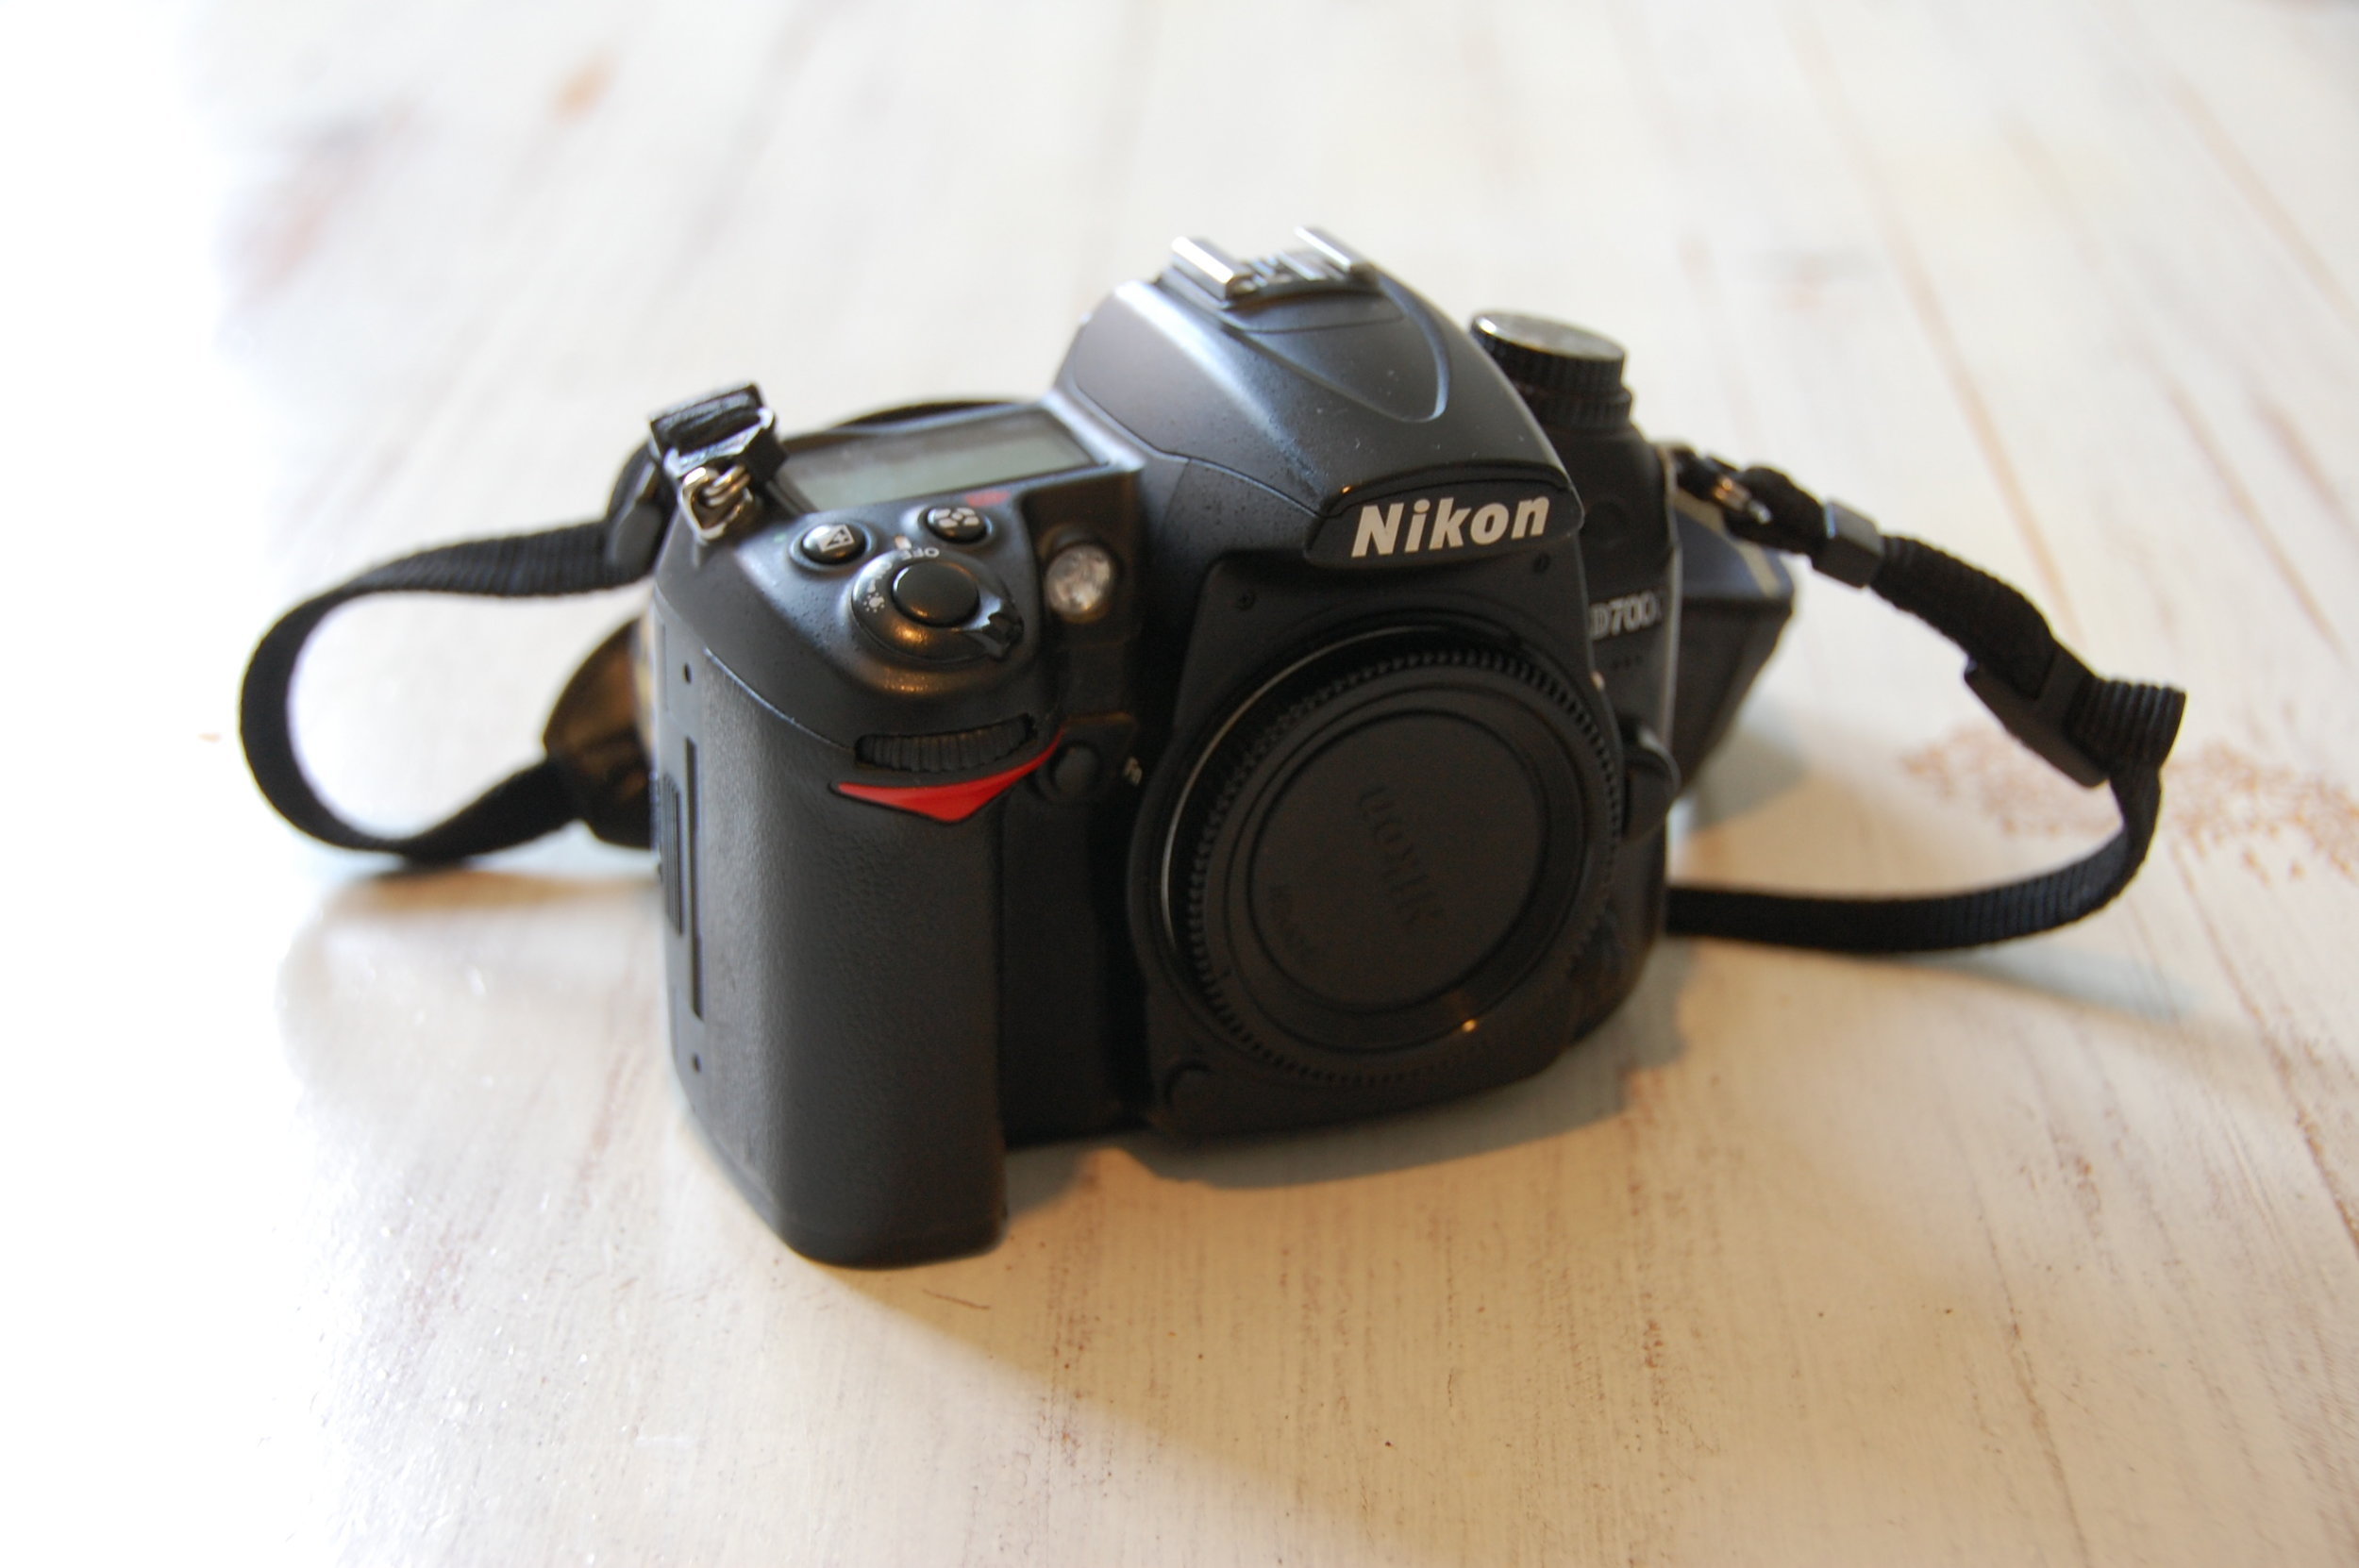 New Nikon D500 Dedication, Best Lens For Landscape Photography Nikon D7000